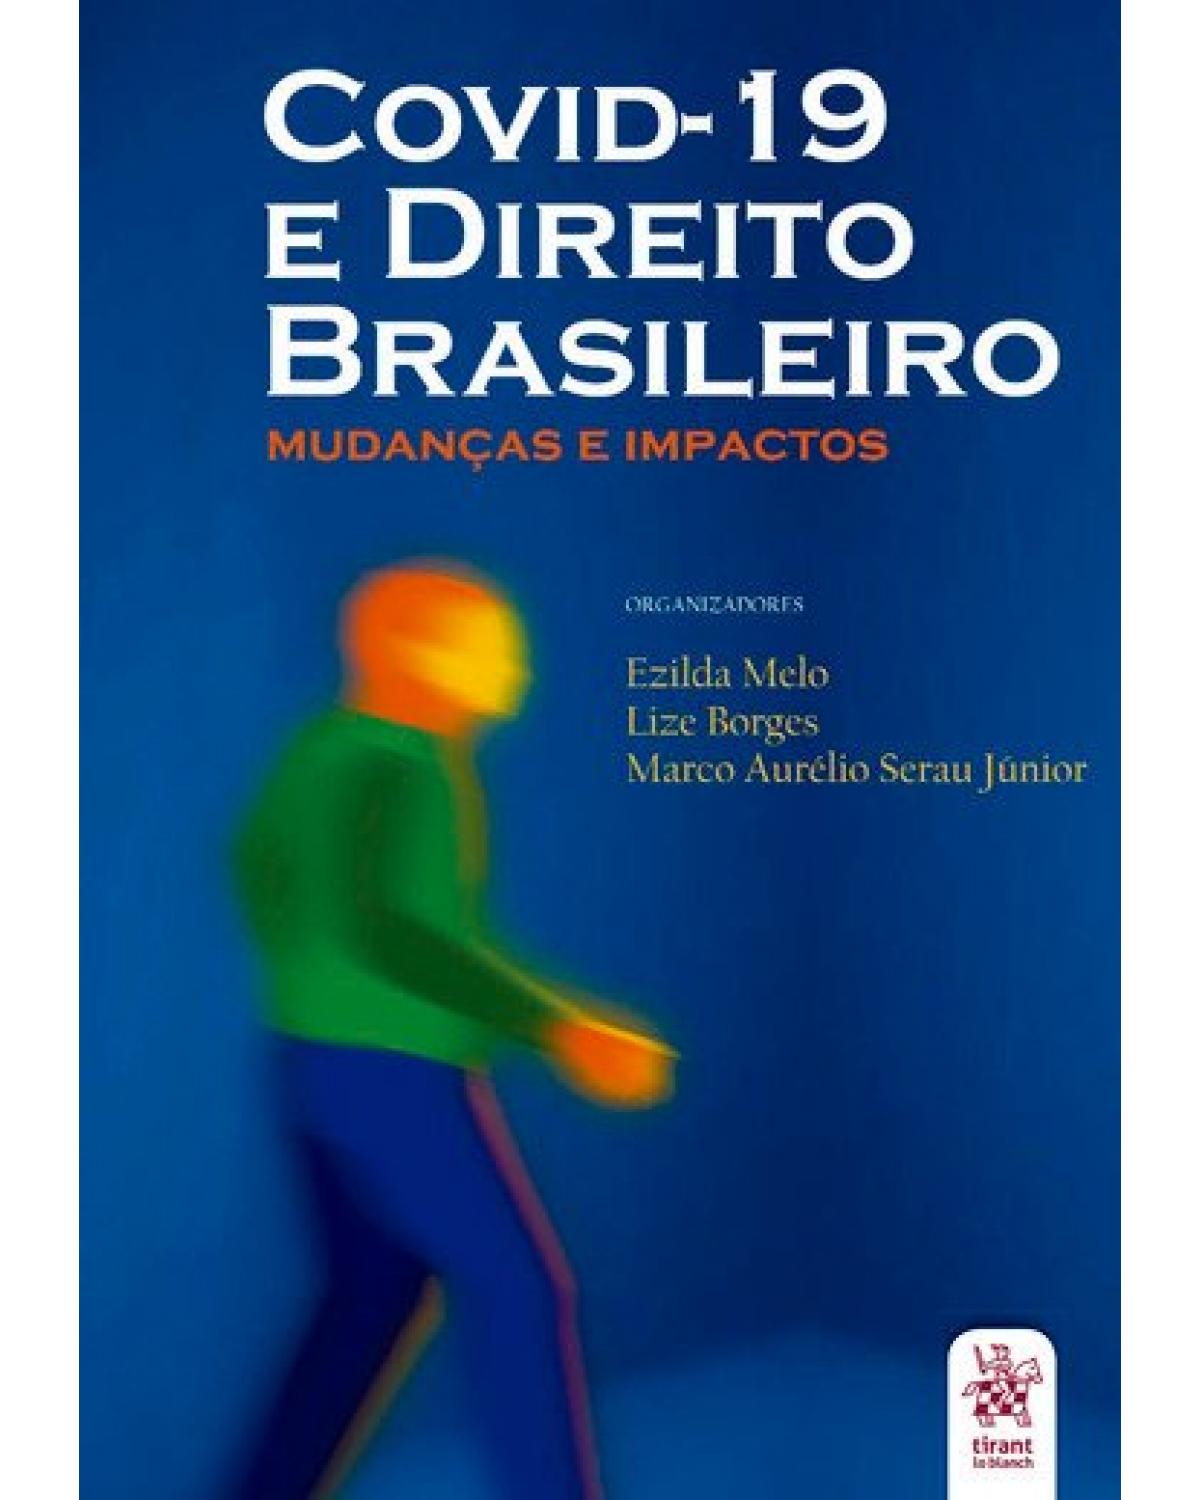 Covid-19 e o direito brasileiro - mudanças e impactos - 1ª Edição | 2020